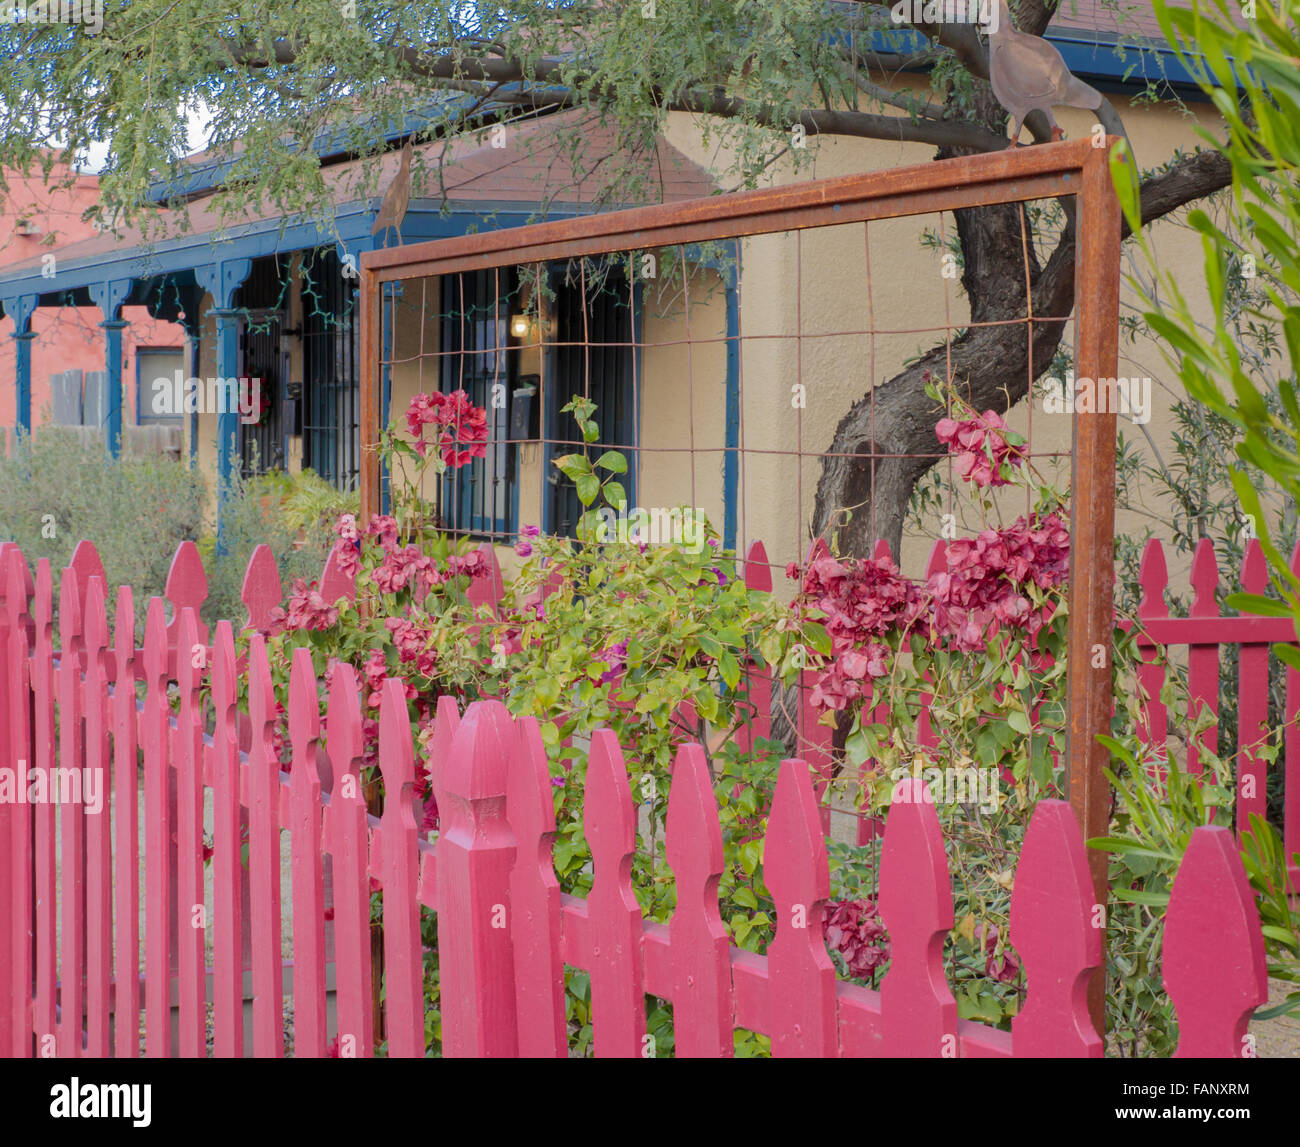 Les piquets de clôture dans une section urbaine de Tucson, Arizona, USA Banque D'Images